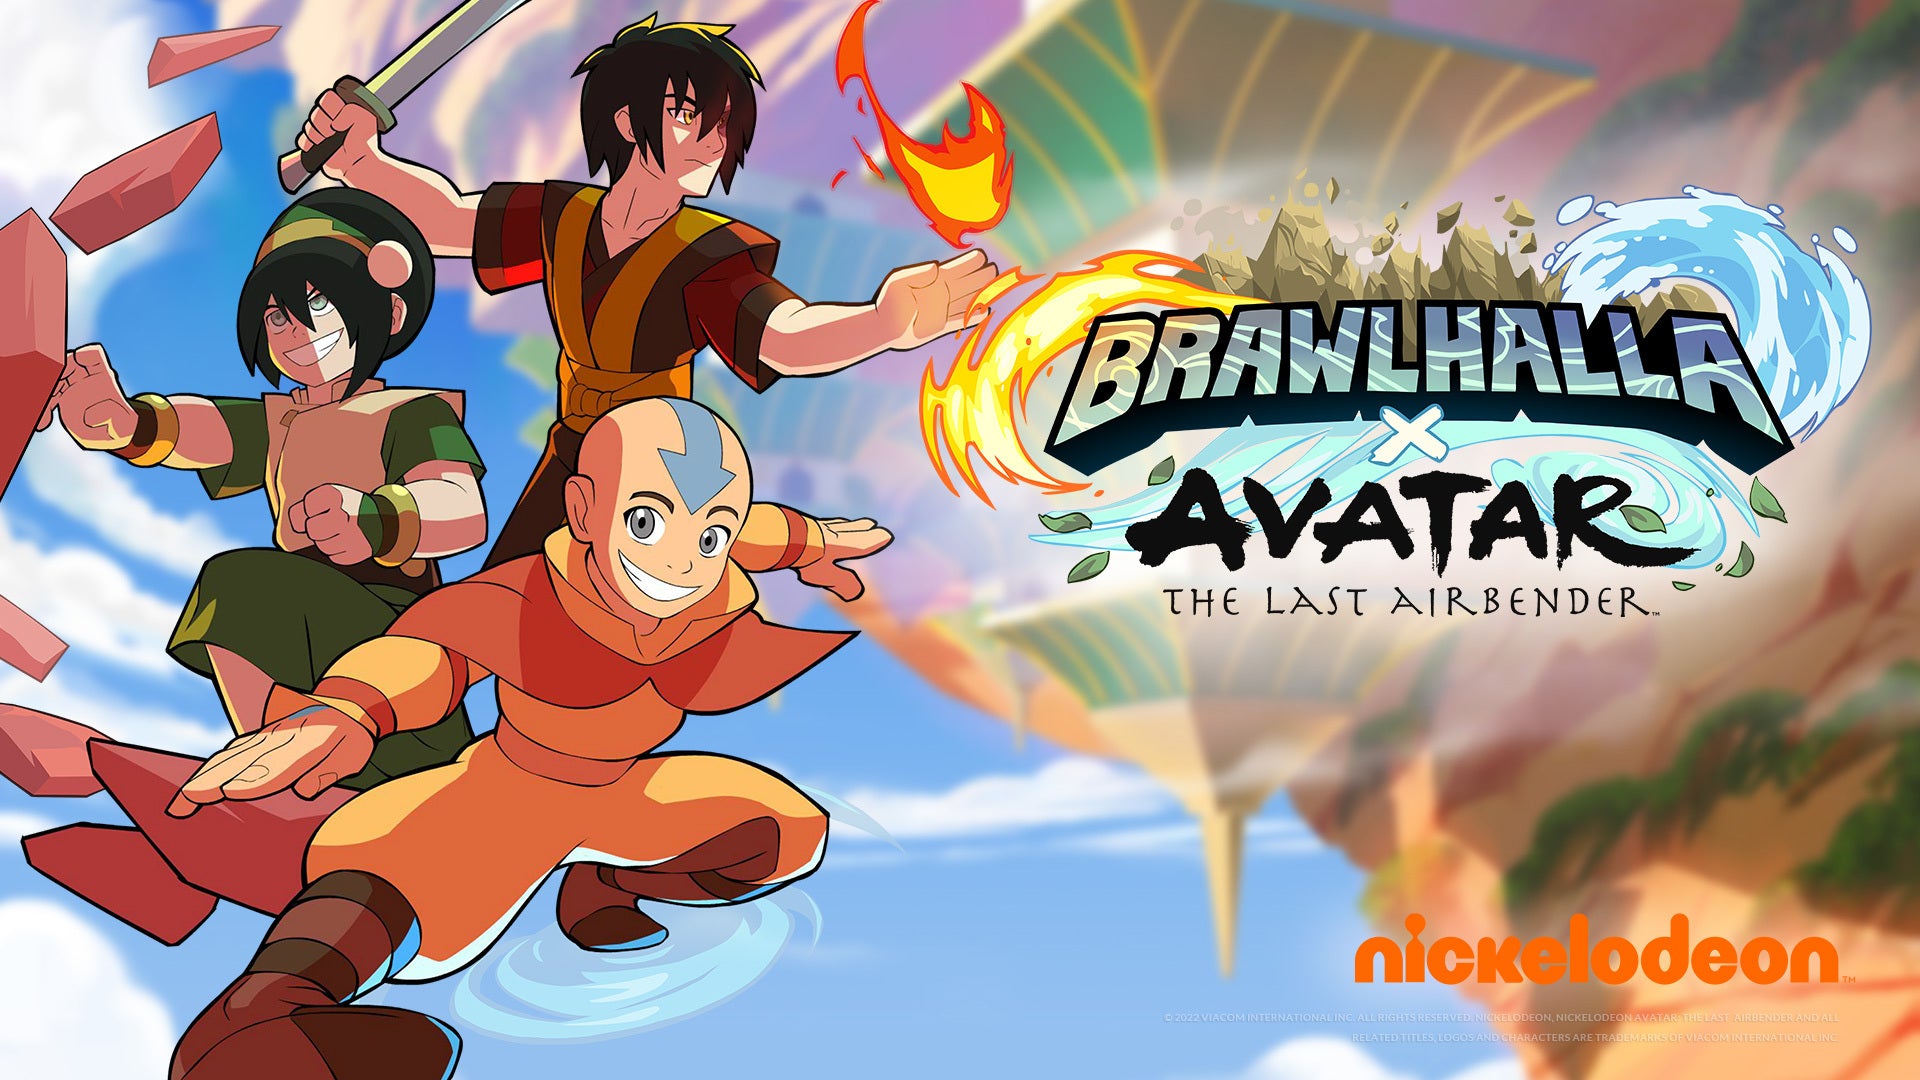 Los héroes de Avatar: The Last Airbender Aang, Toph y Zuko se unirán a Brawlhalla como crossovers épicos el 16 de noviembre